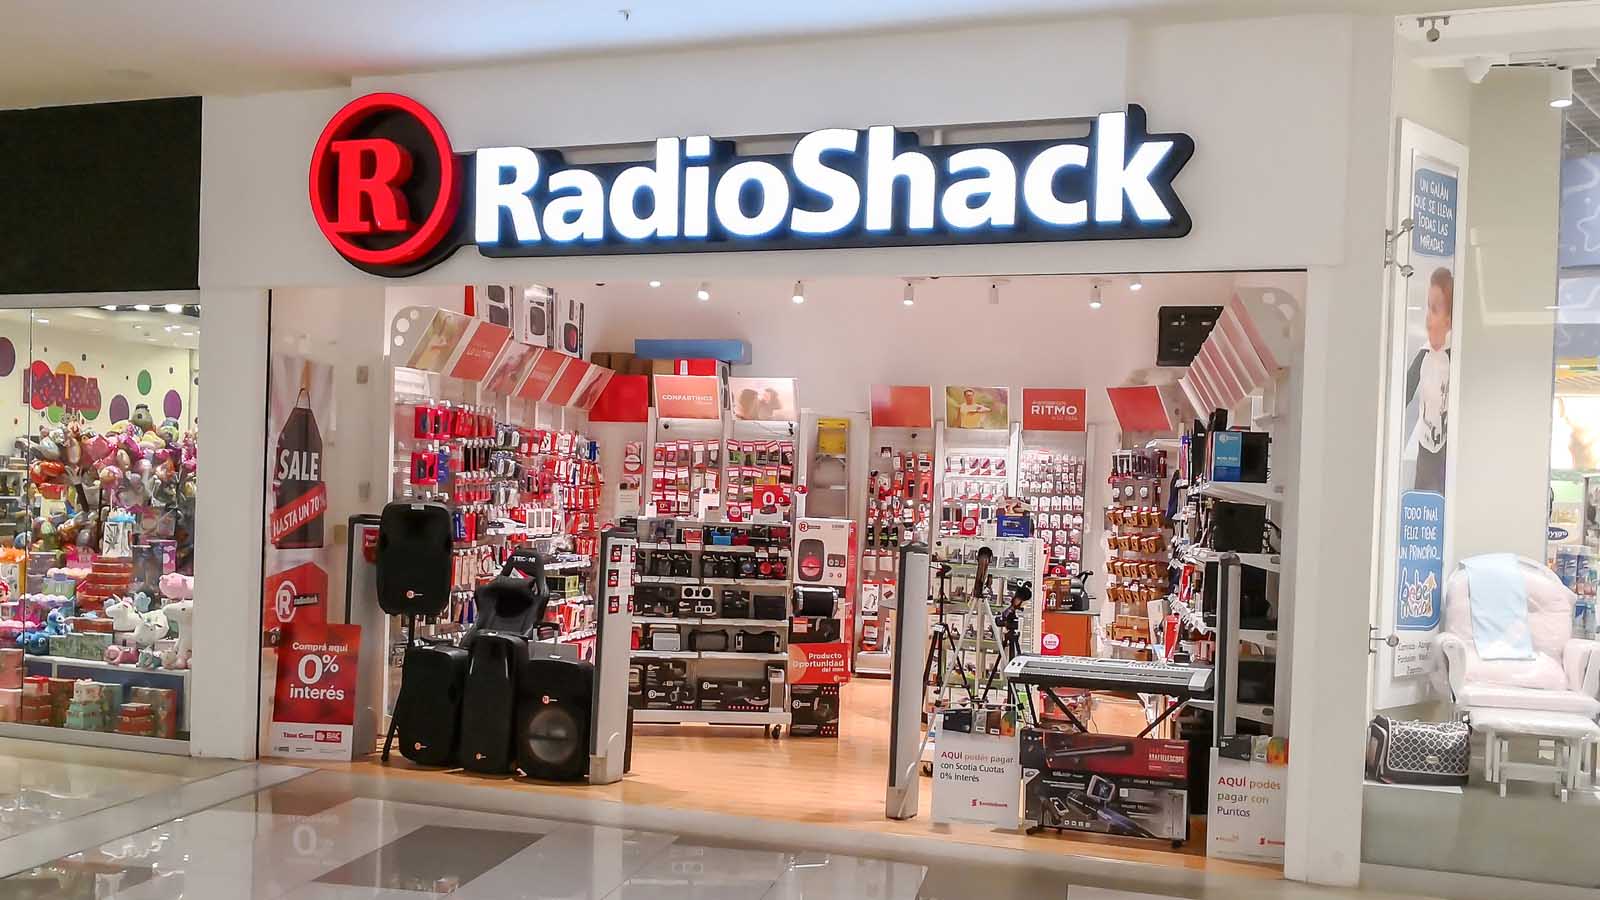 Una imagen de una tienda de RadioShack en un centro comercial que representa las predicciones de precios de RadioShack.